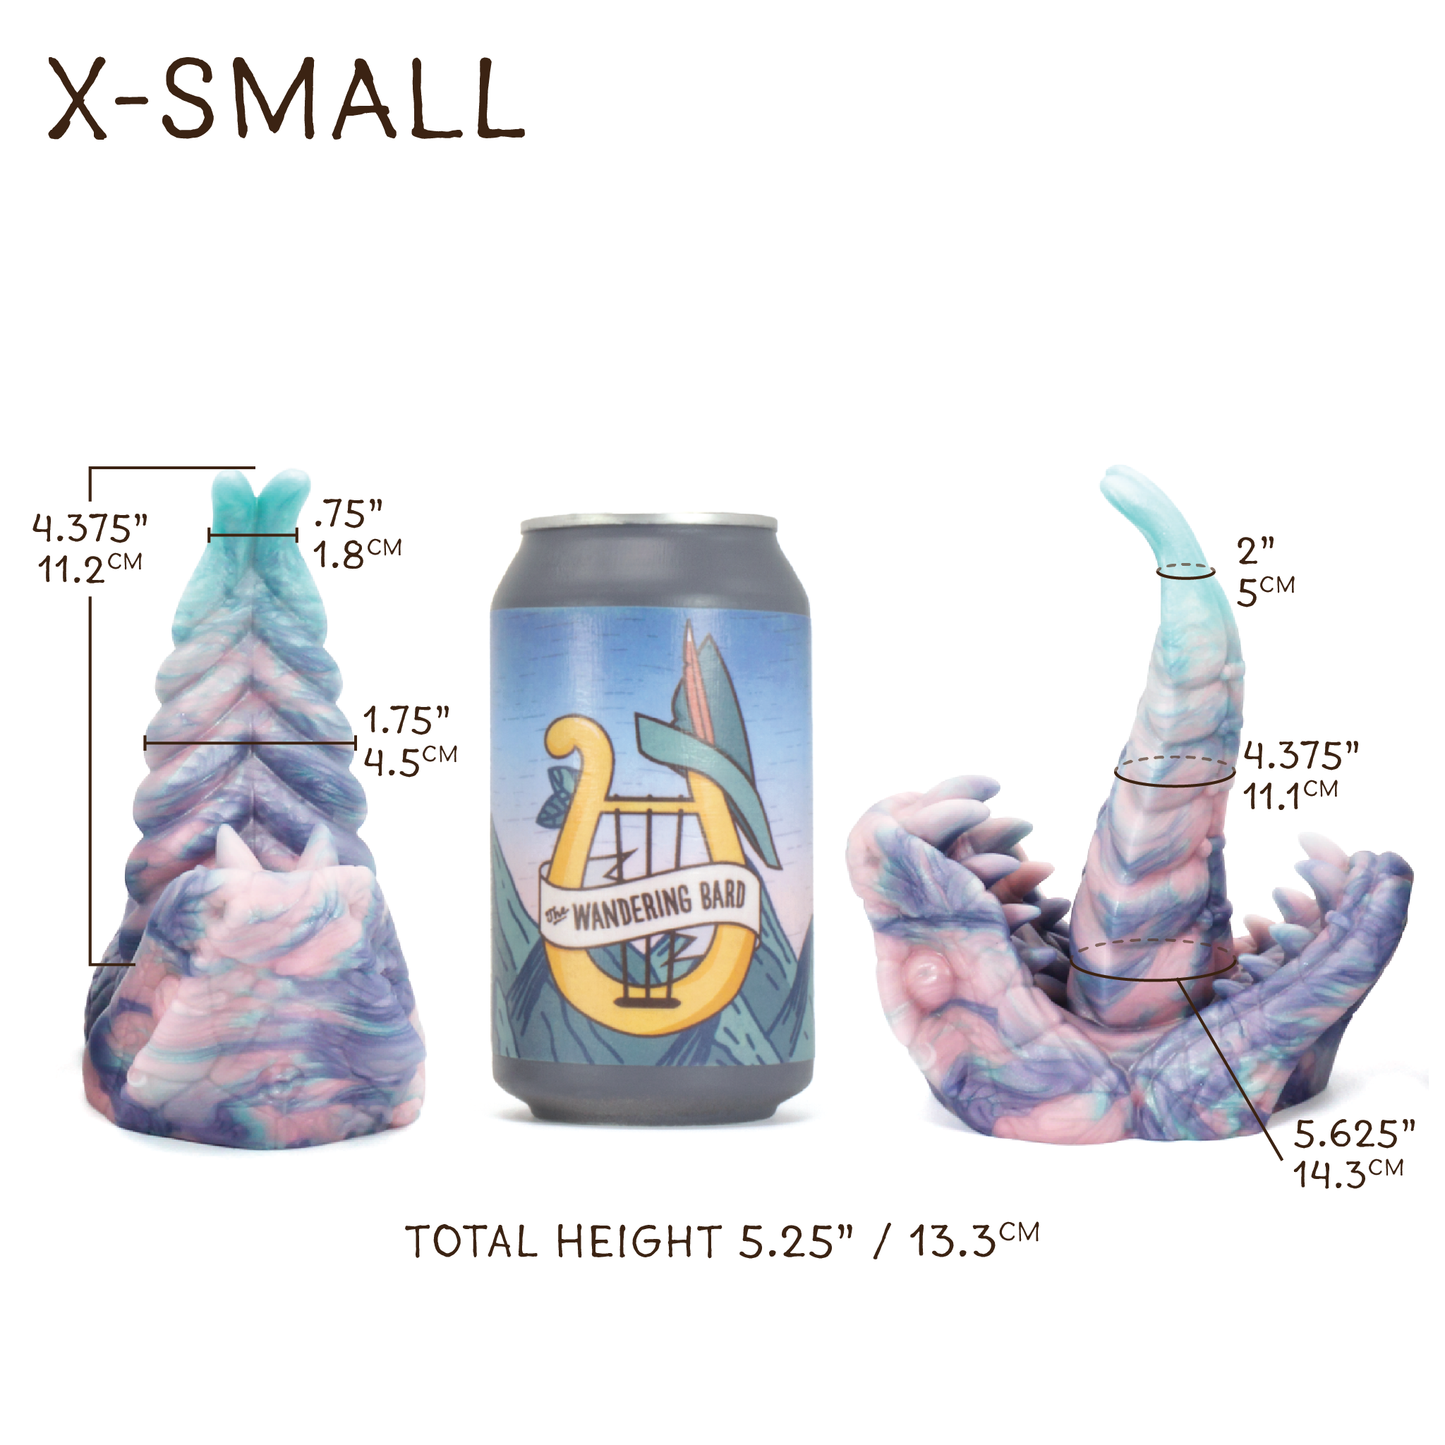 X-Small Yuanti 00-30 Soft Holiday Candy